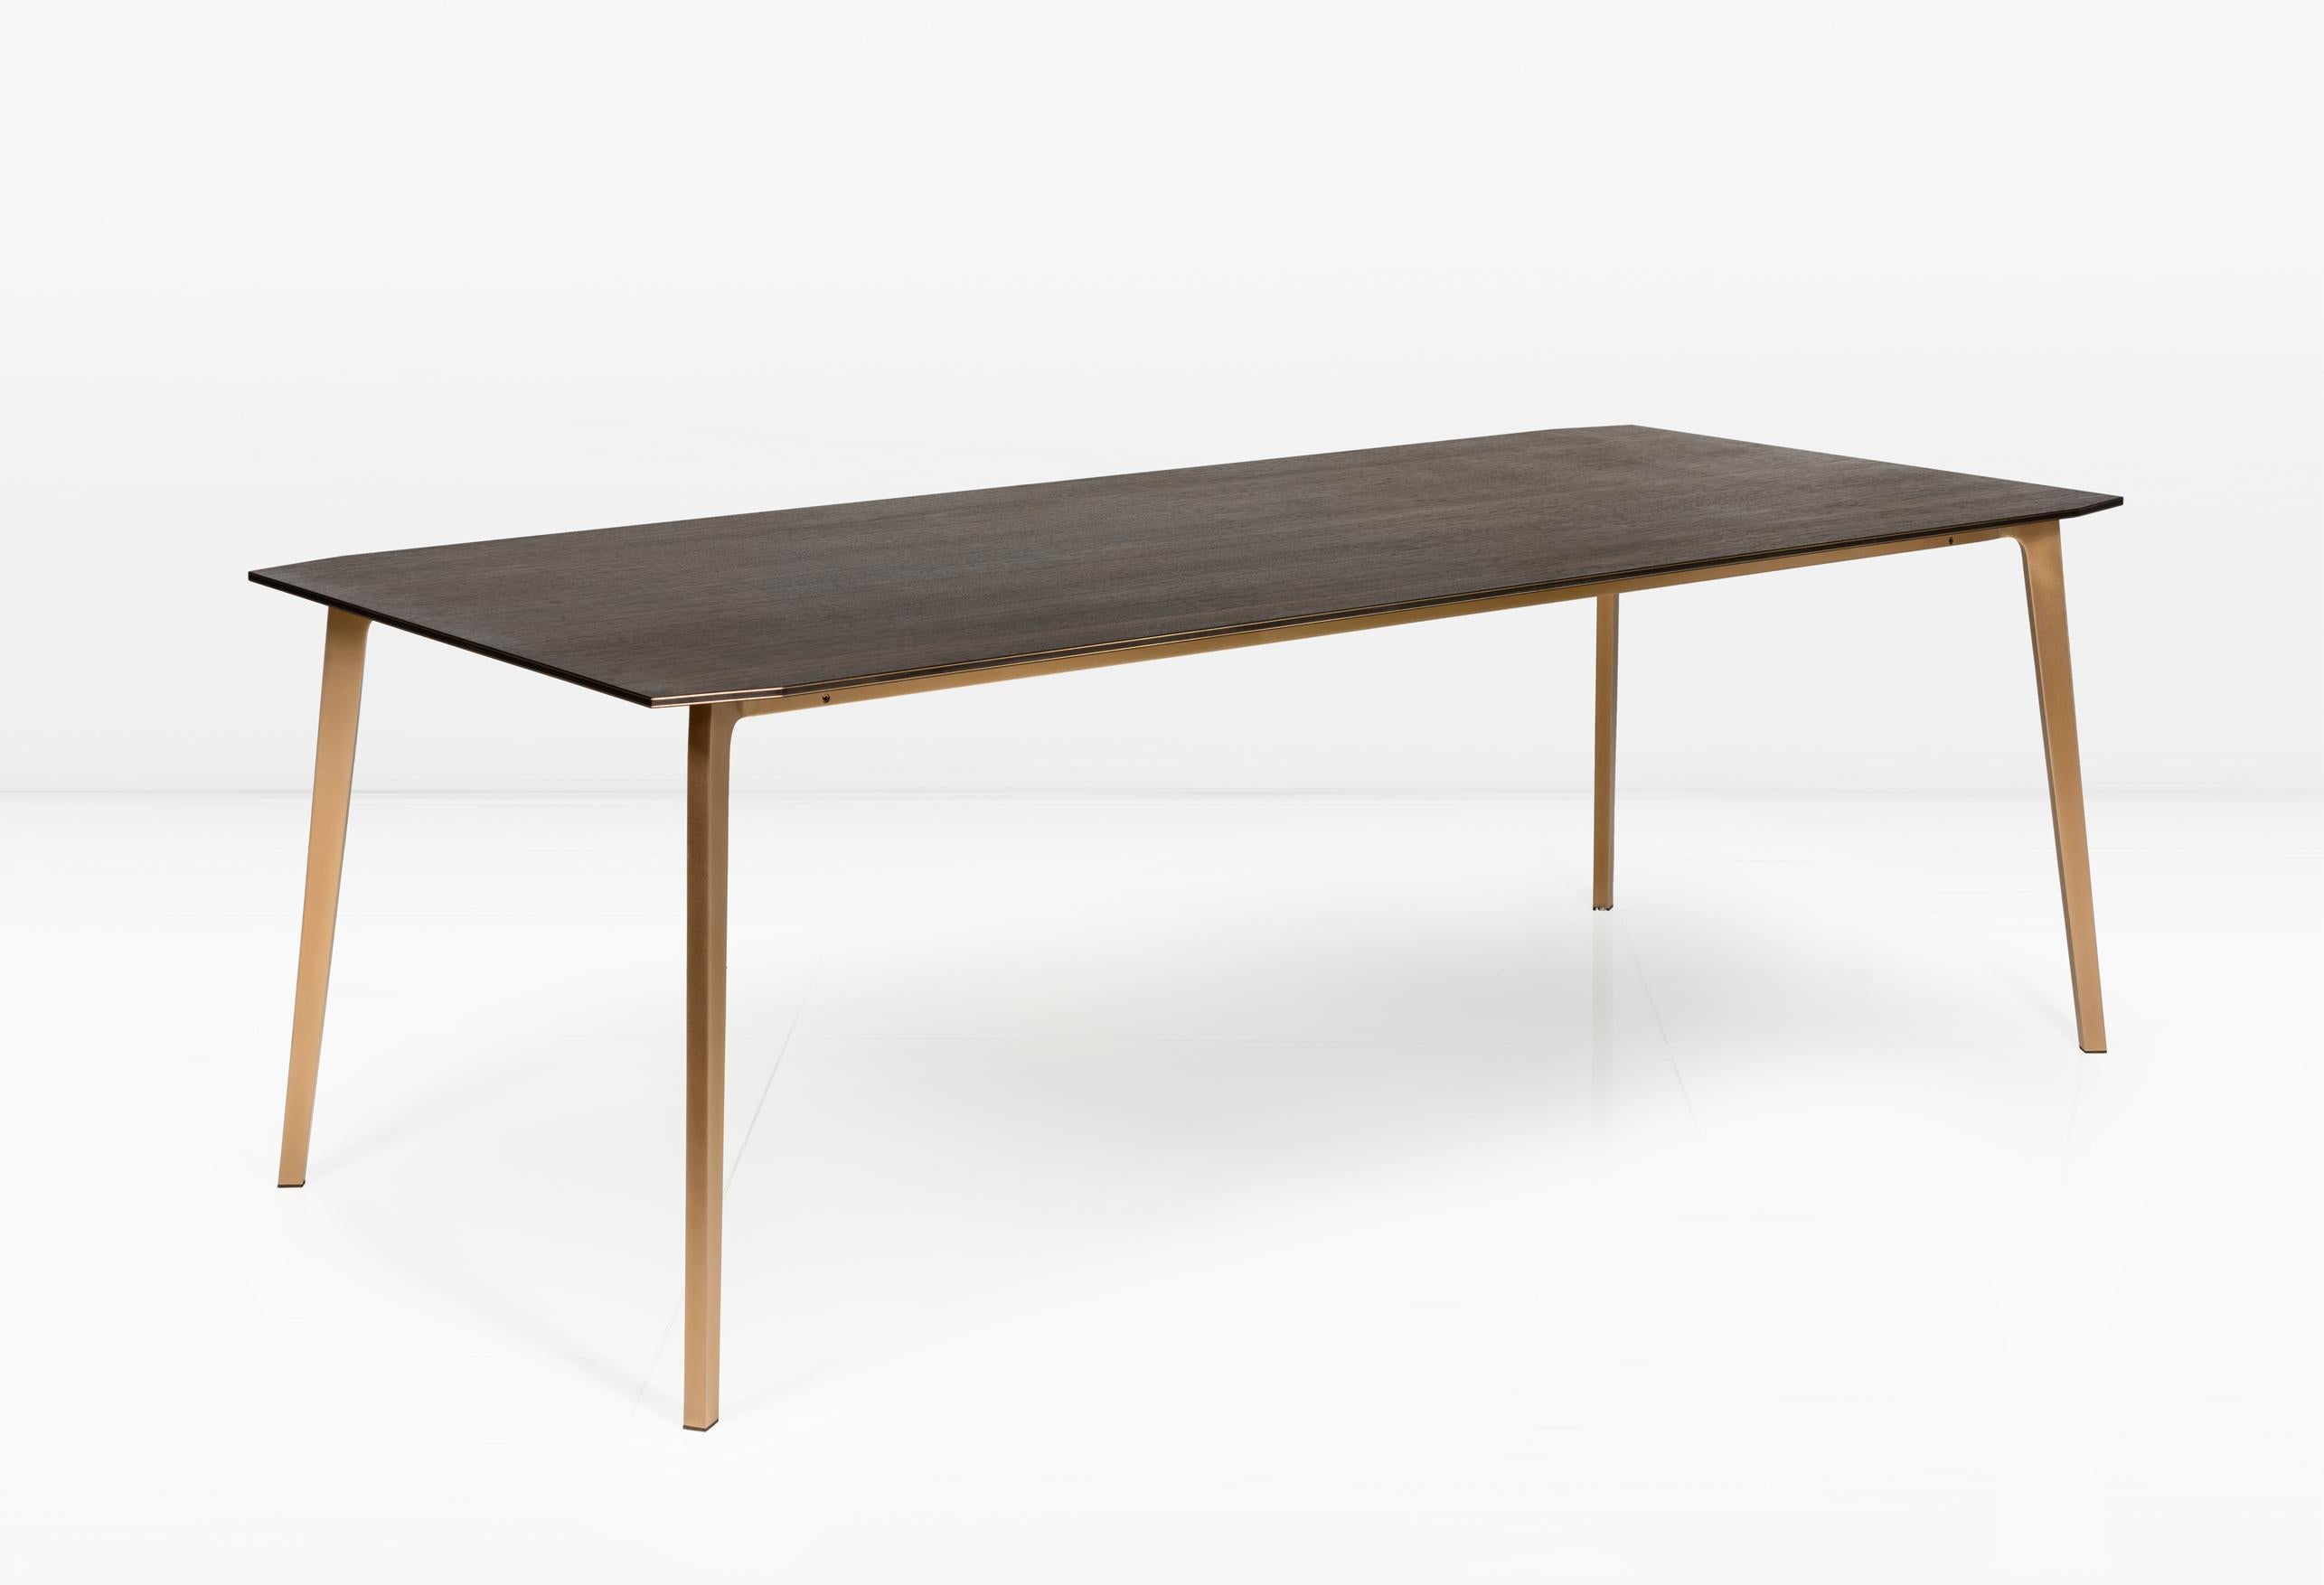 Die Platte des Blackburn besteht aus abwechselnden Holz- und Metallschichten, die sich entlang der Tischkanten ausdehnen und an beiden Enden subtil gegliedert sind. Der Blackburn eignet sich hervorragend als Esstisch oder Schreibtisch. 

Der massive